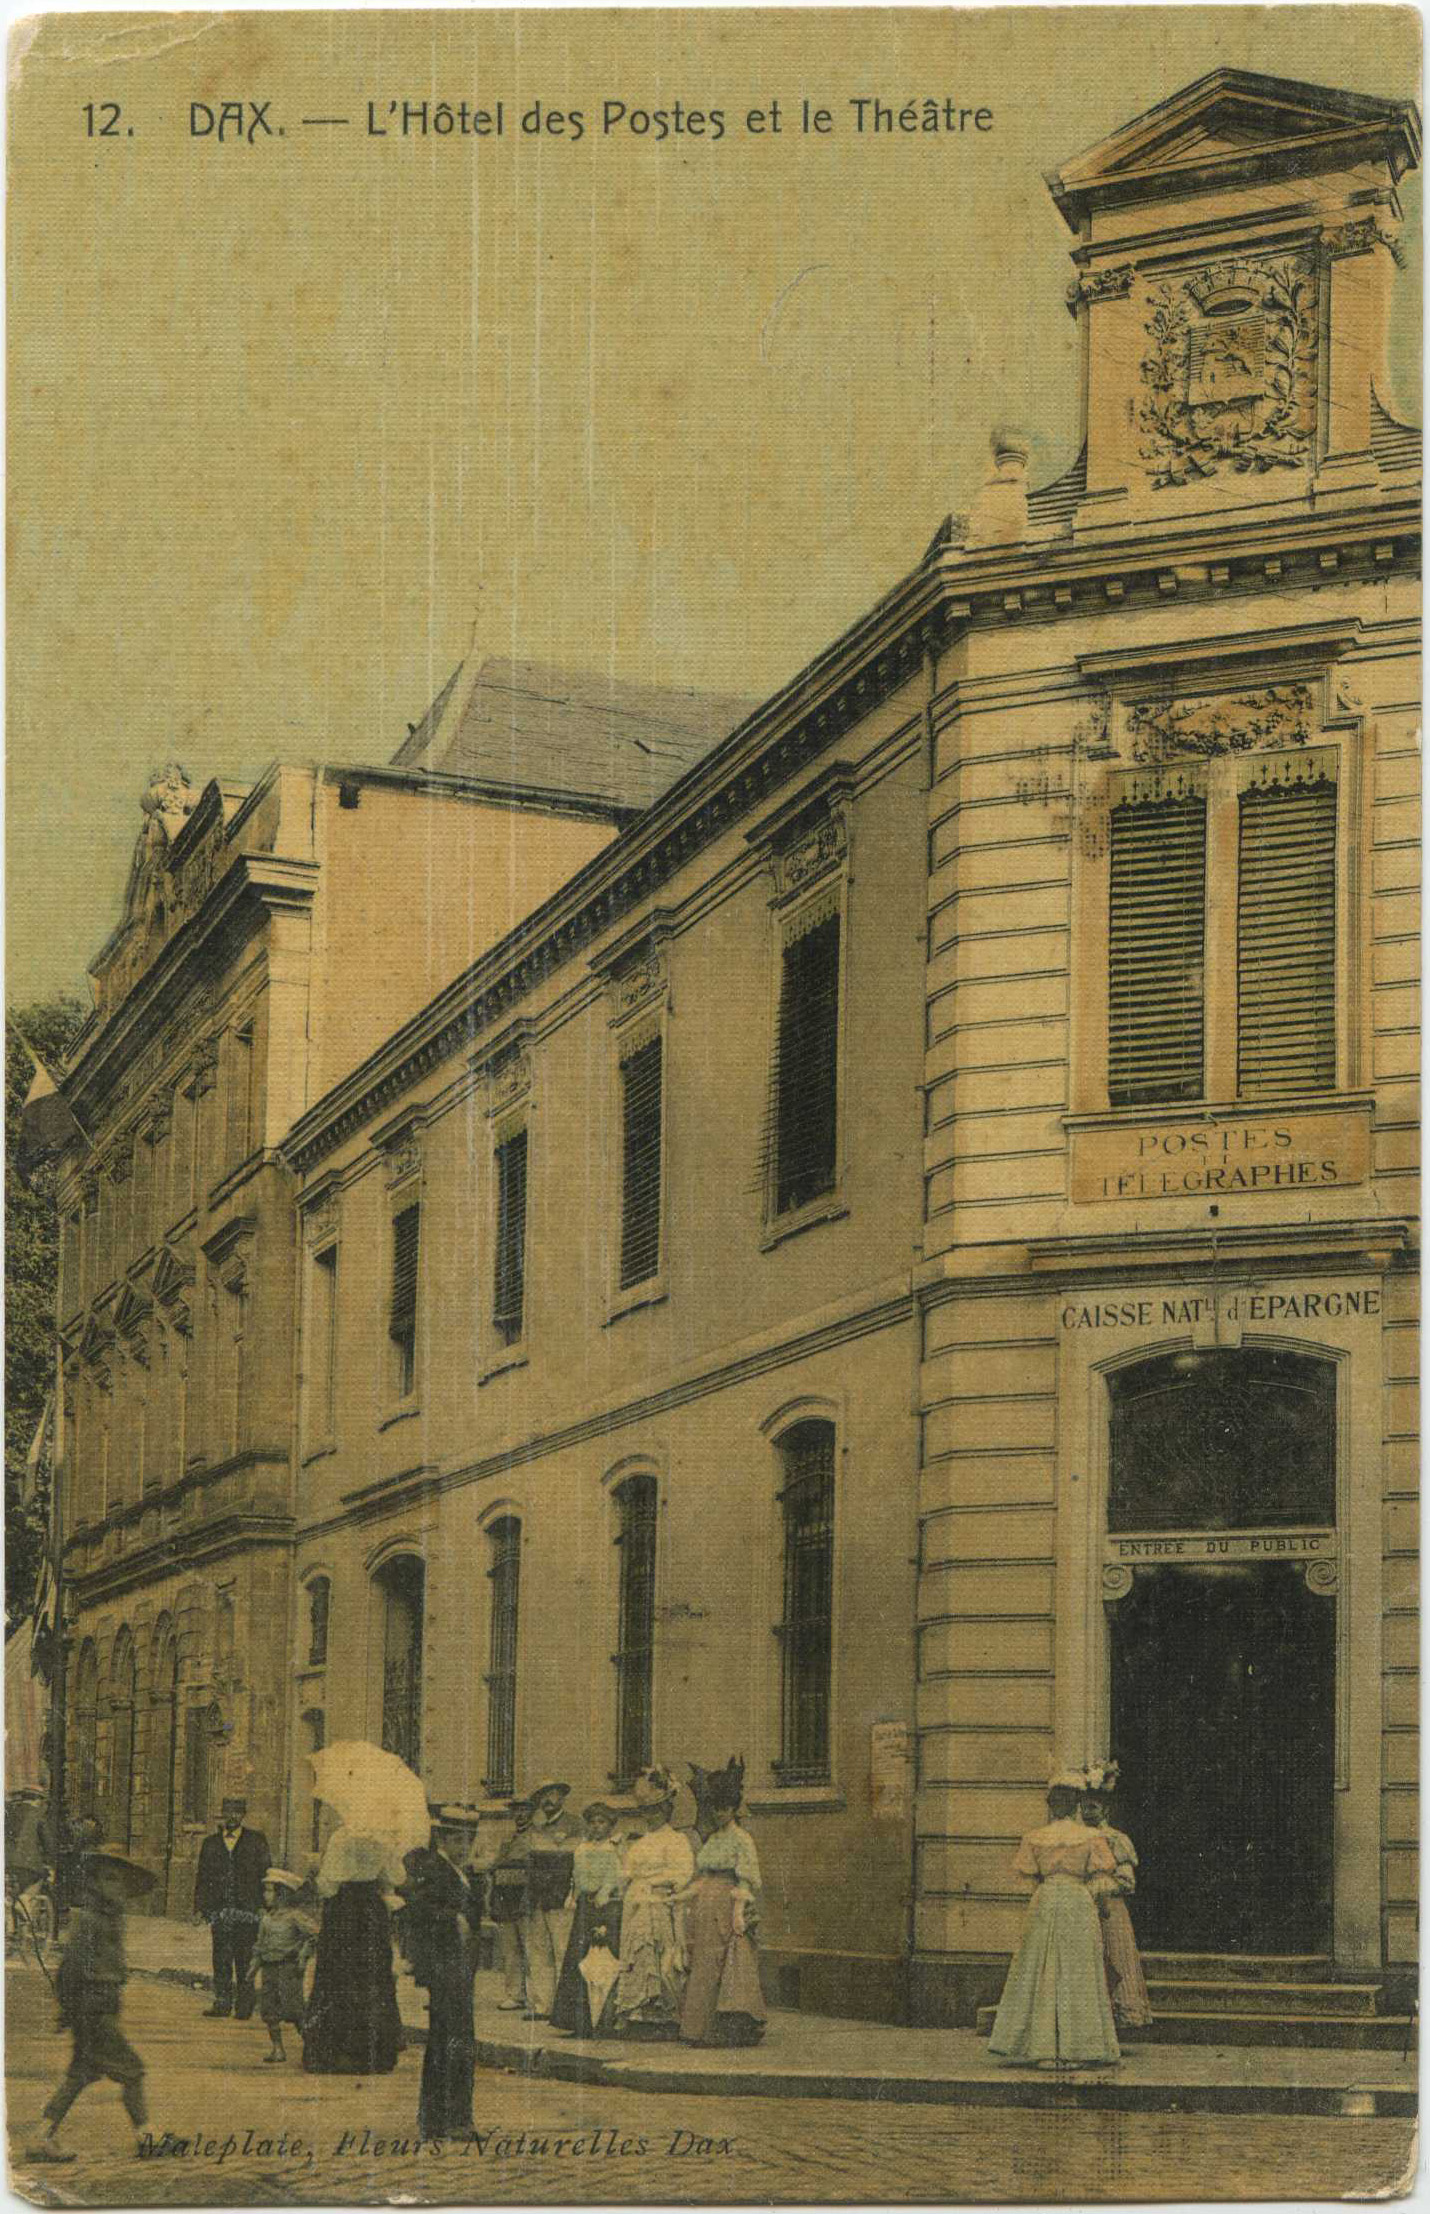 Dax - L'Hôtel des Postes et le Théâtre